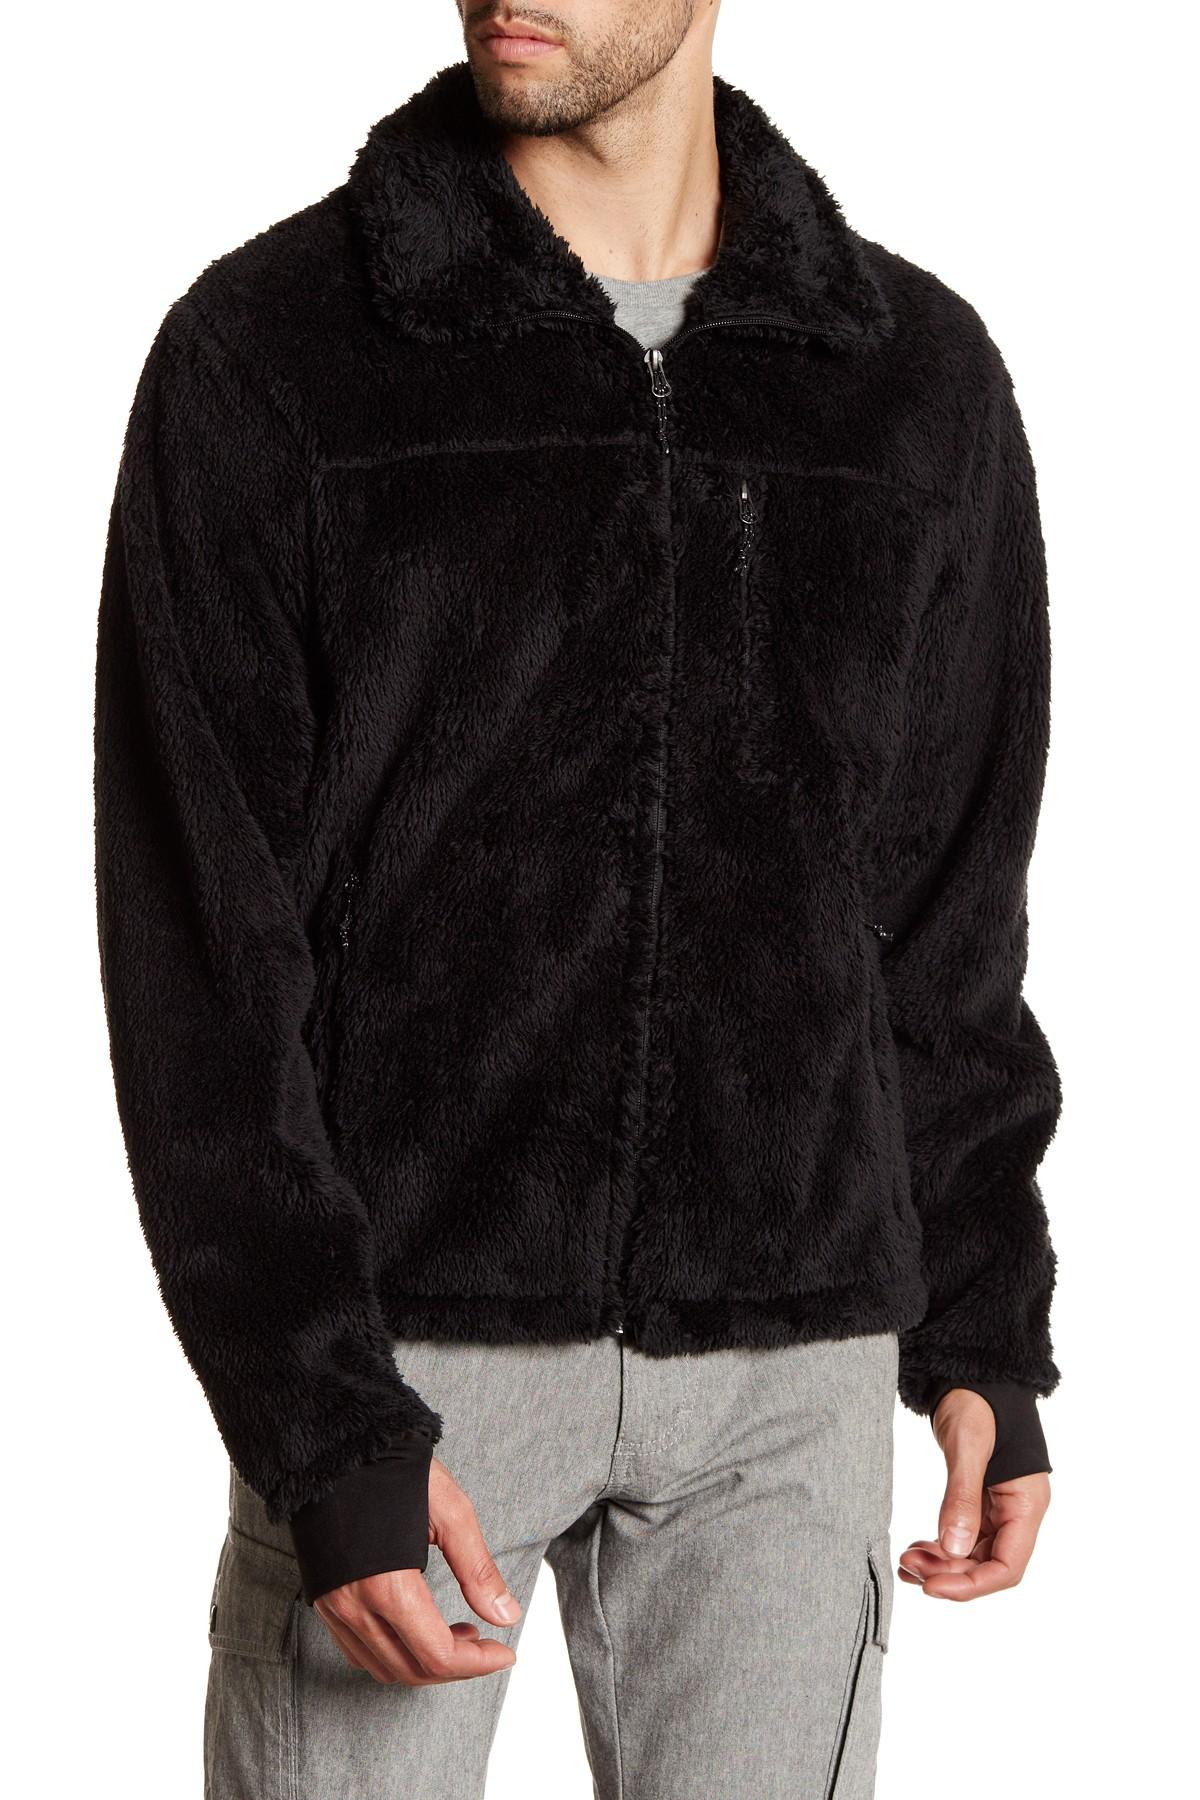 Hawke & Co. Fleece Jacket in Black for Men - Lyst